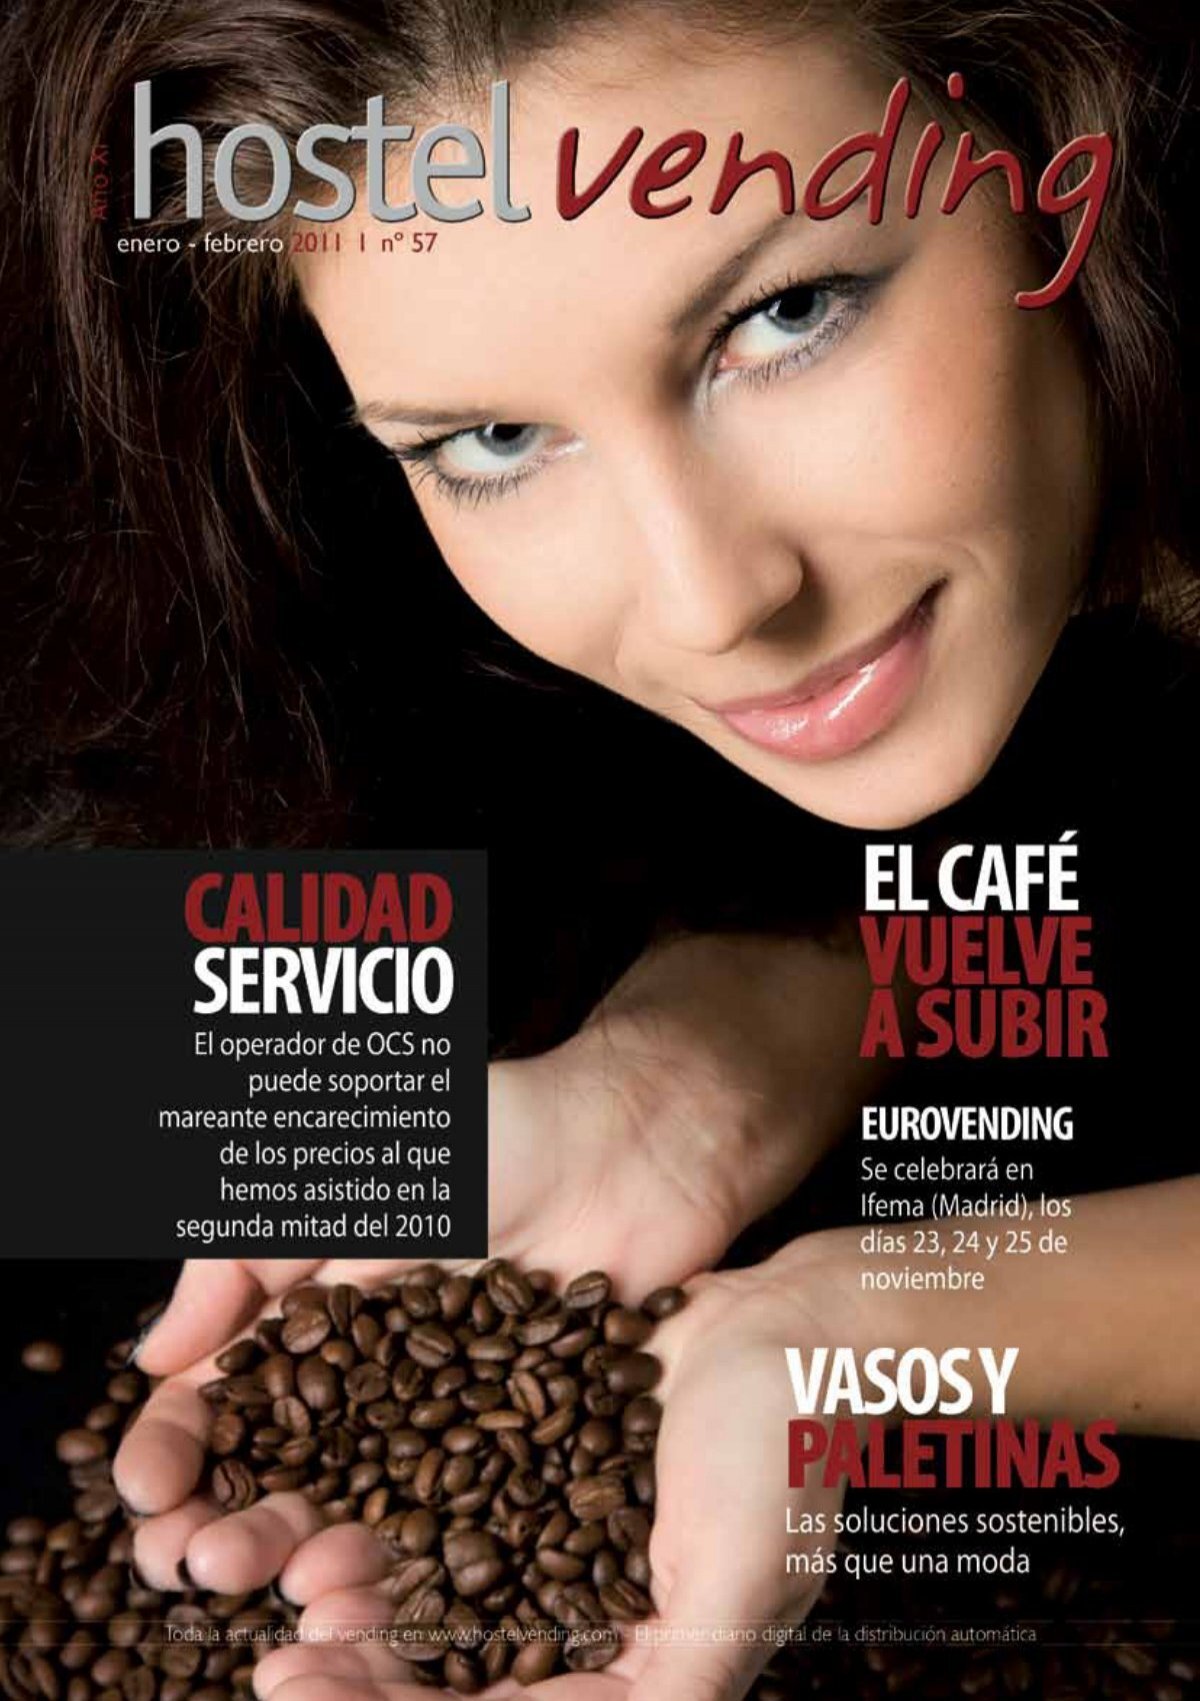 Café Saula incrementará su facturación un 6% este año